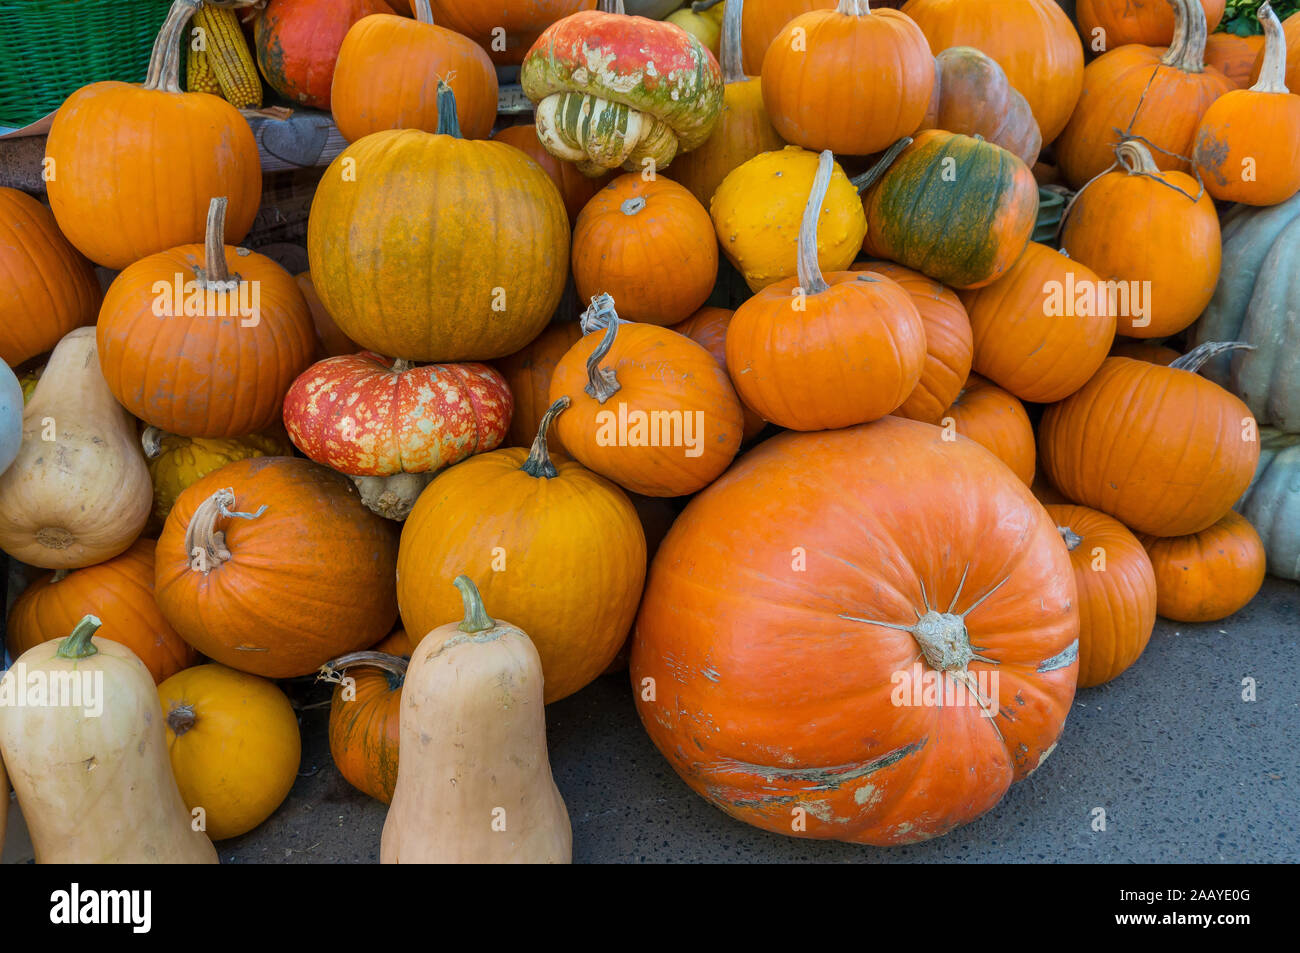 Automne Couleur Pumpkins im Whole Foods Market.fruits et légumes crus. Concept d'aliments biologiques sains Banque D'Images